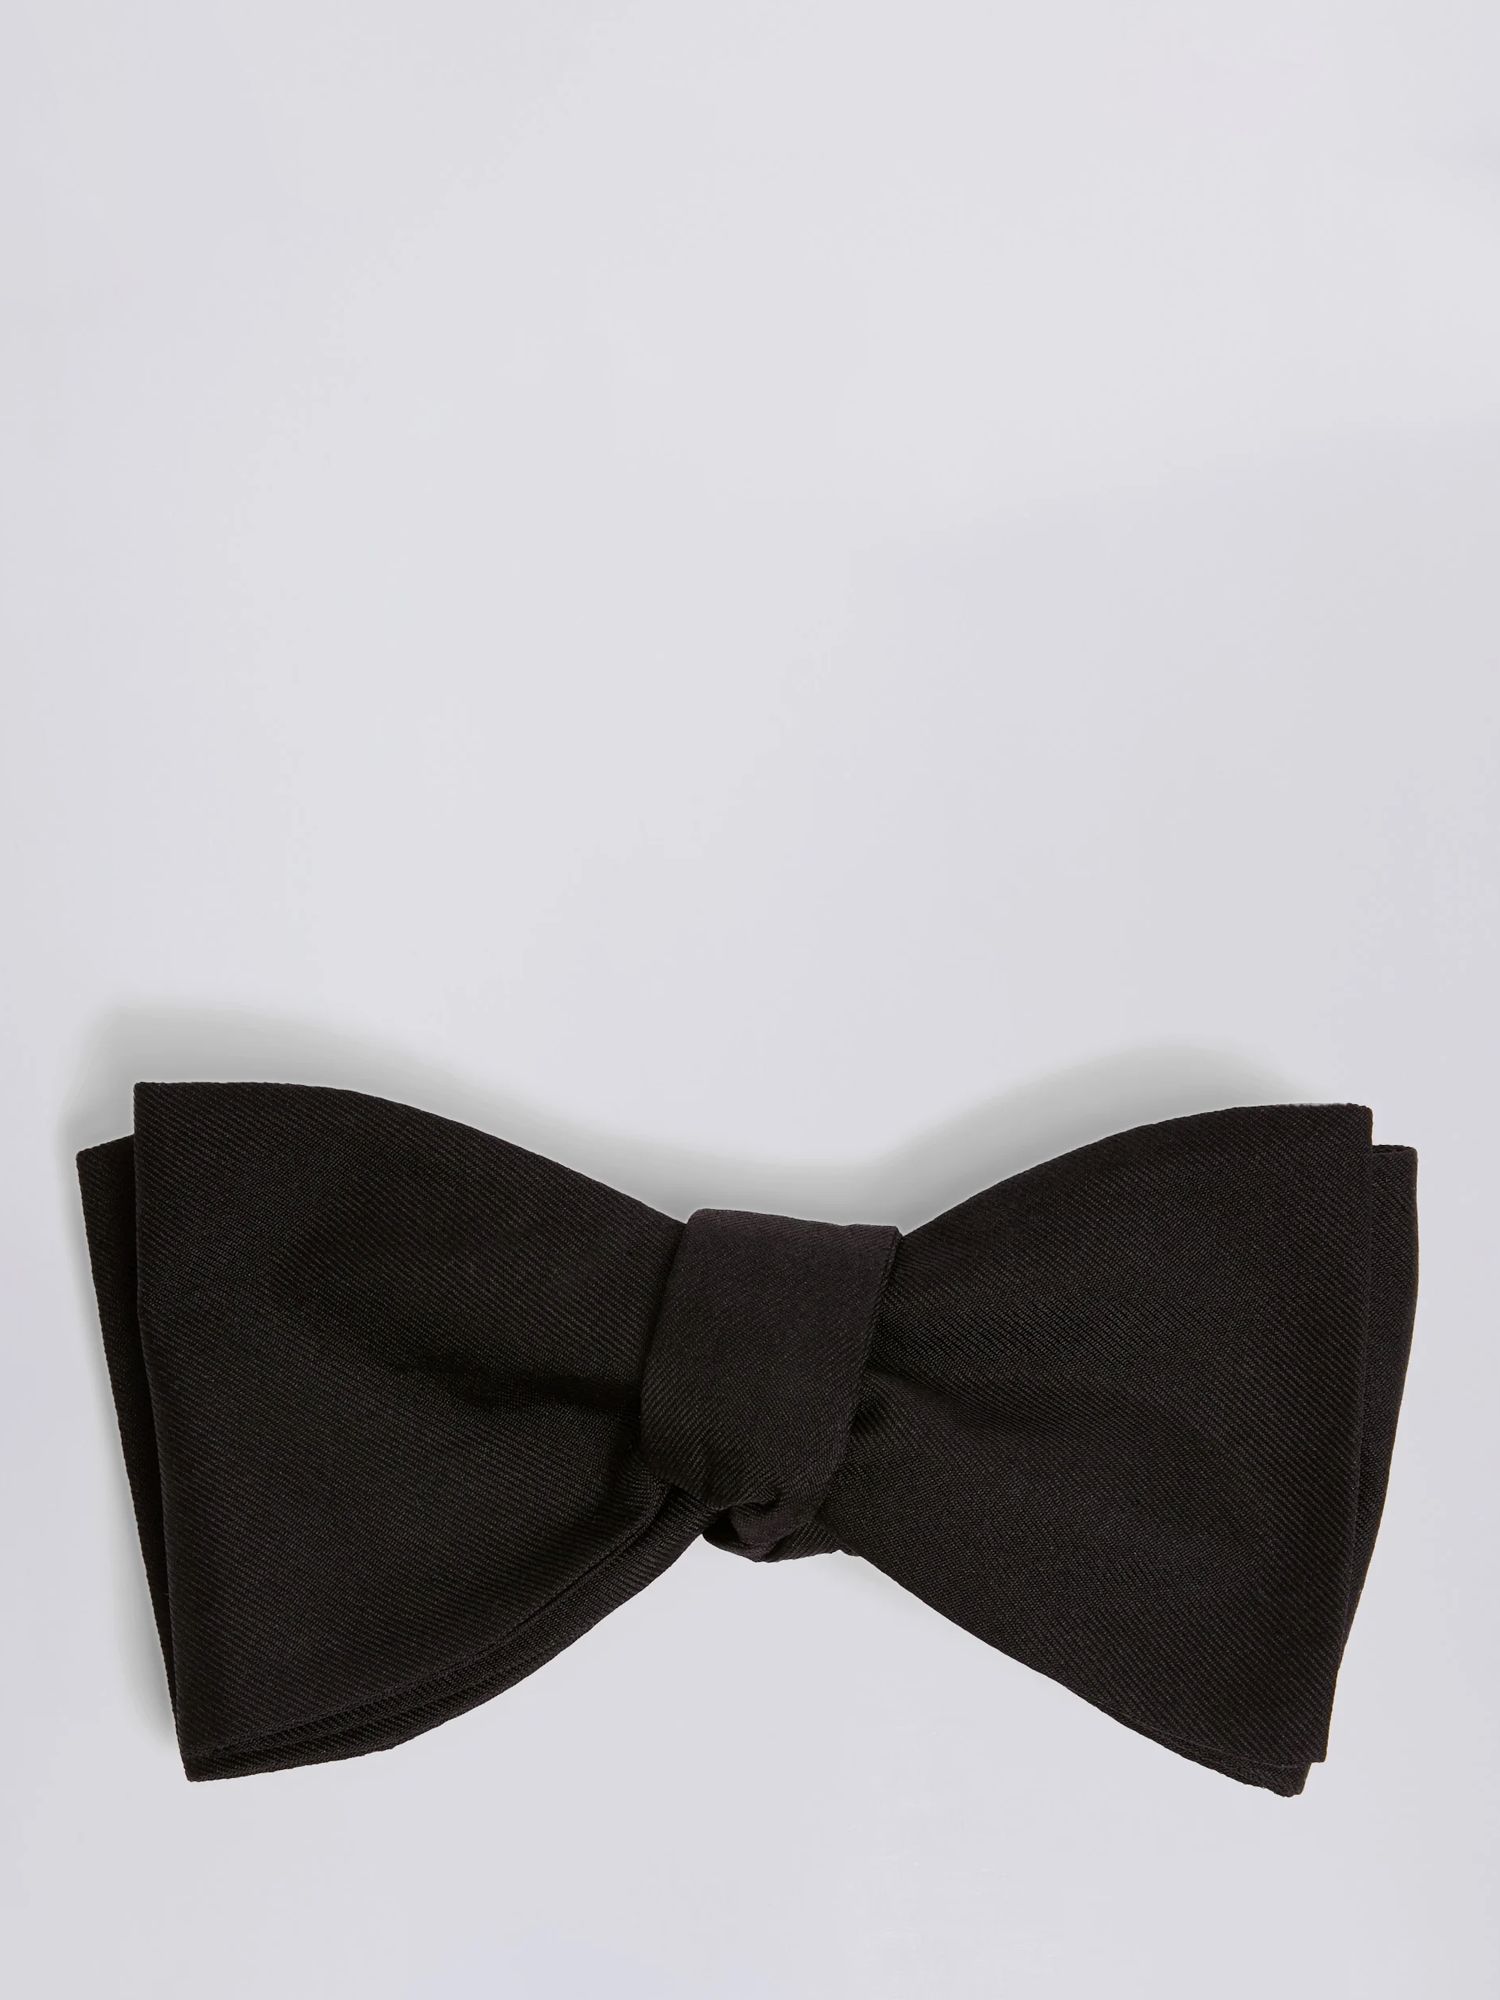 Moss Silk Self Tie Bow Tie, Black, One Size